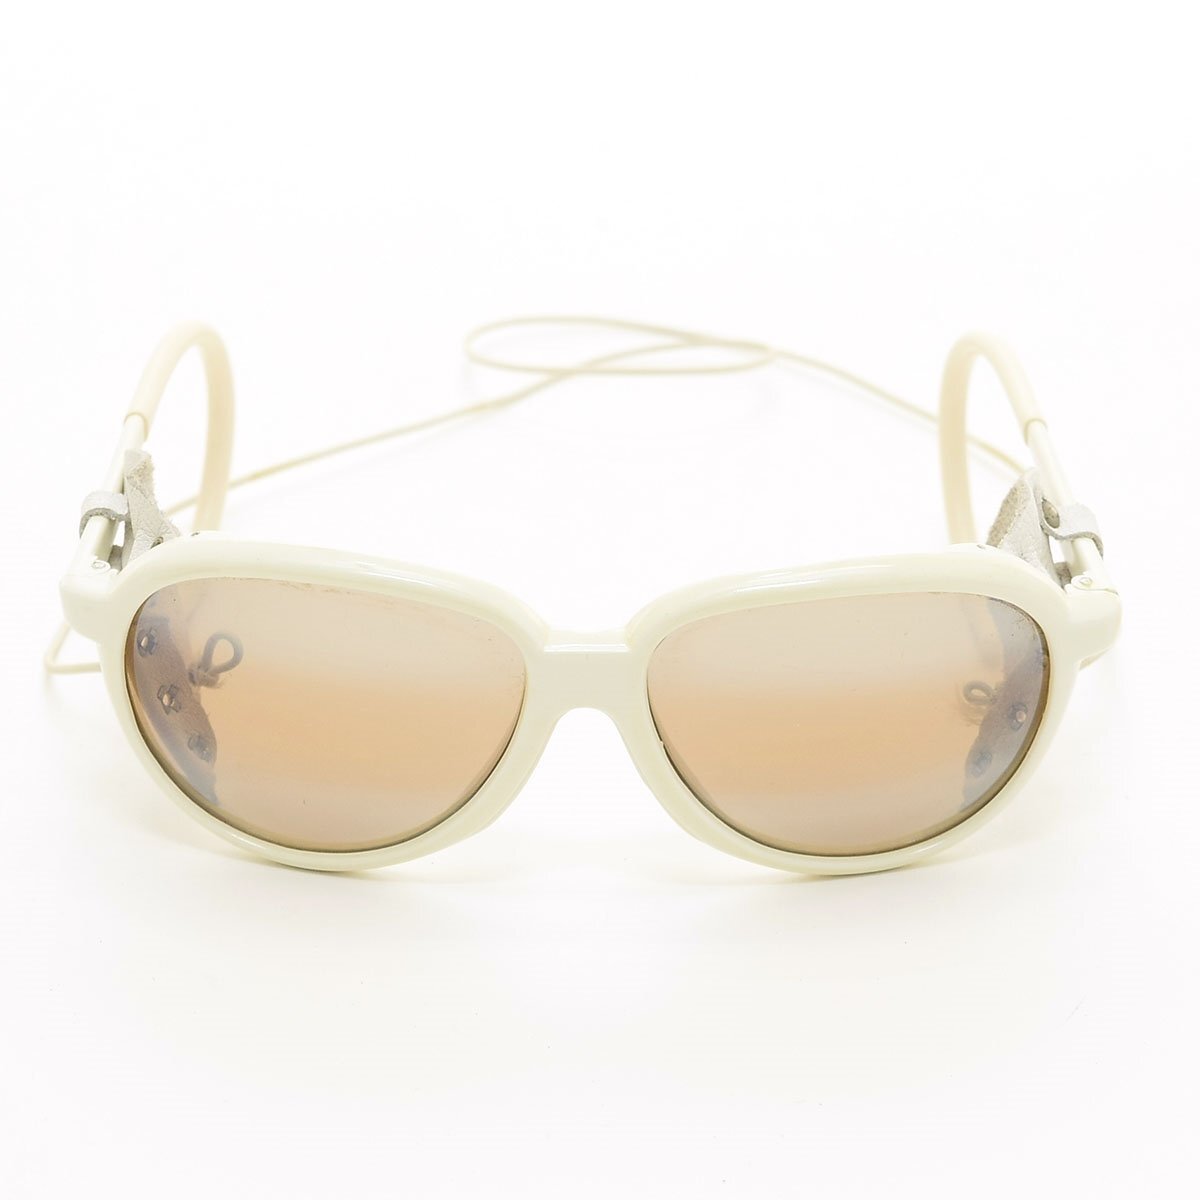 ◆510140 SWANS ...  солнцезащитные очки   винтажный    мужской   OFF  белый   коричневый  градация  зеркало   оптика  